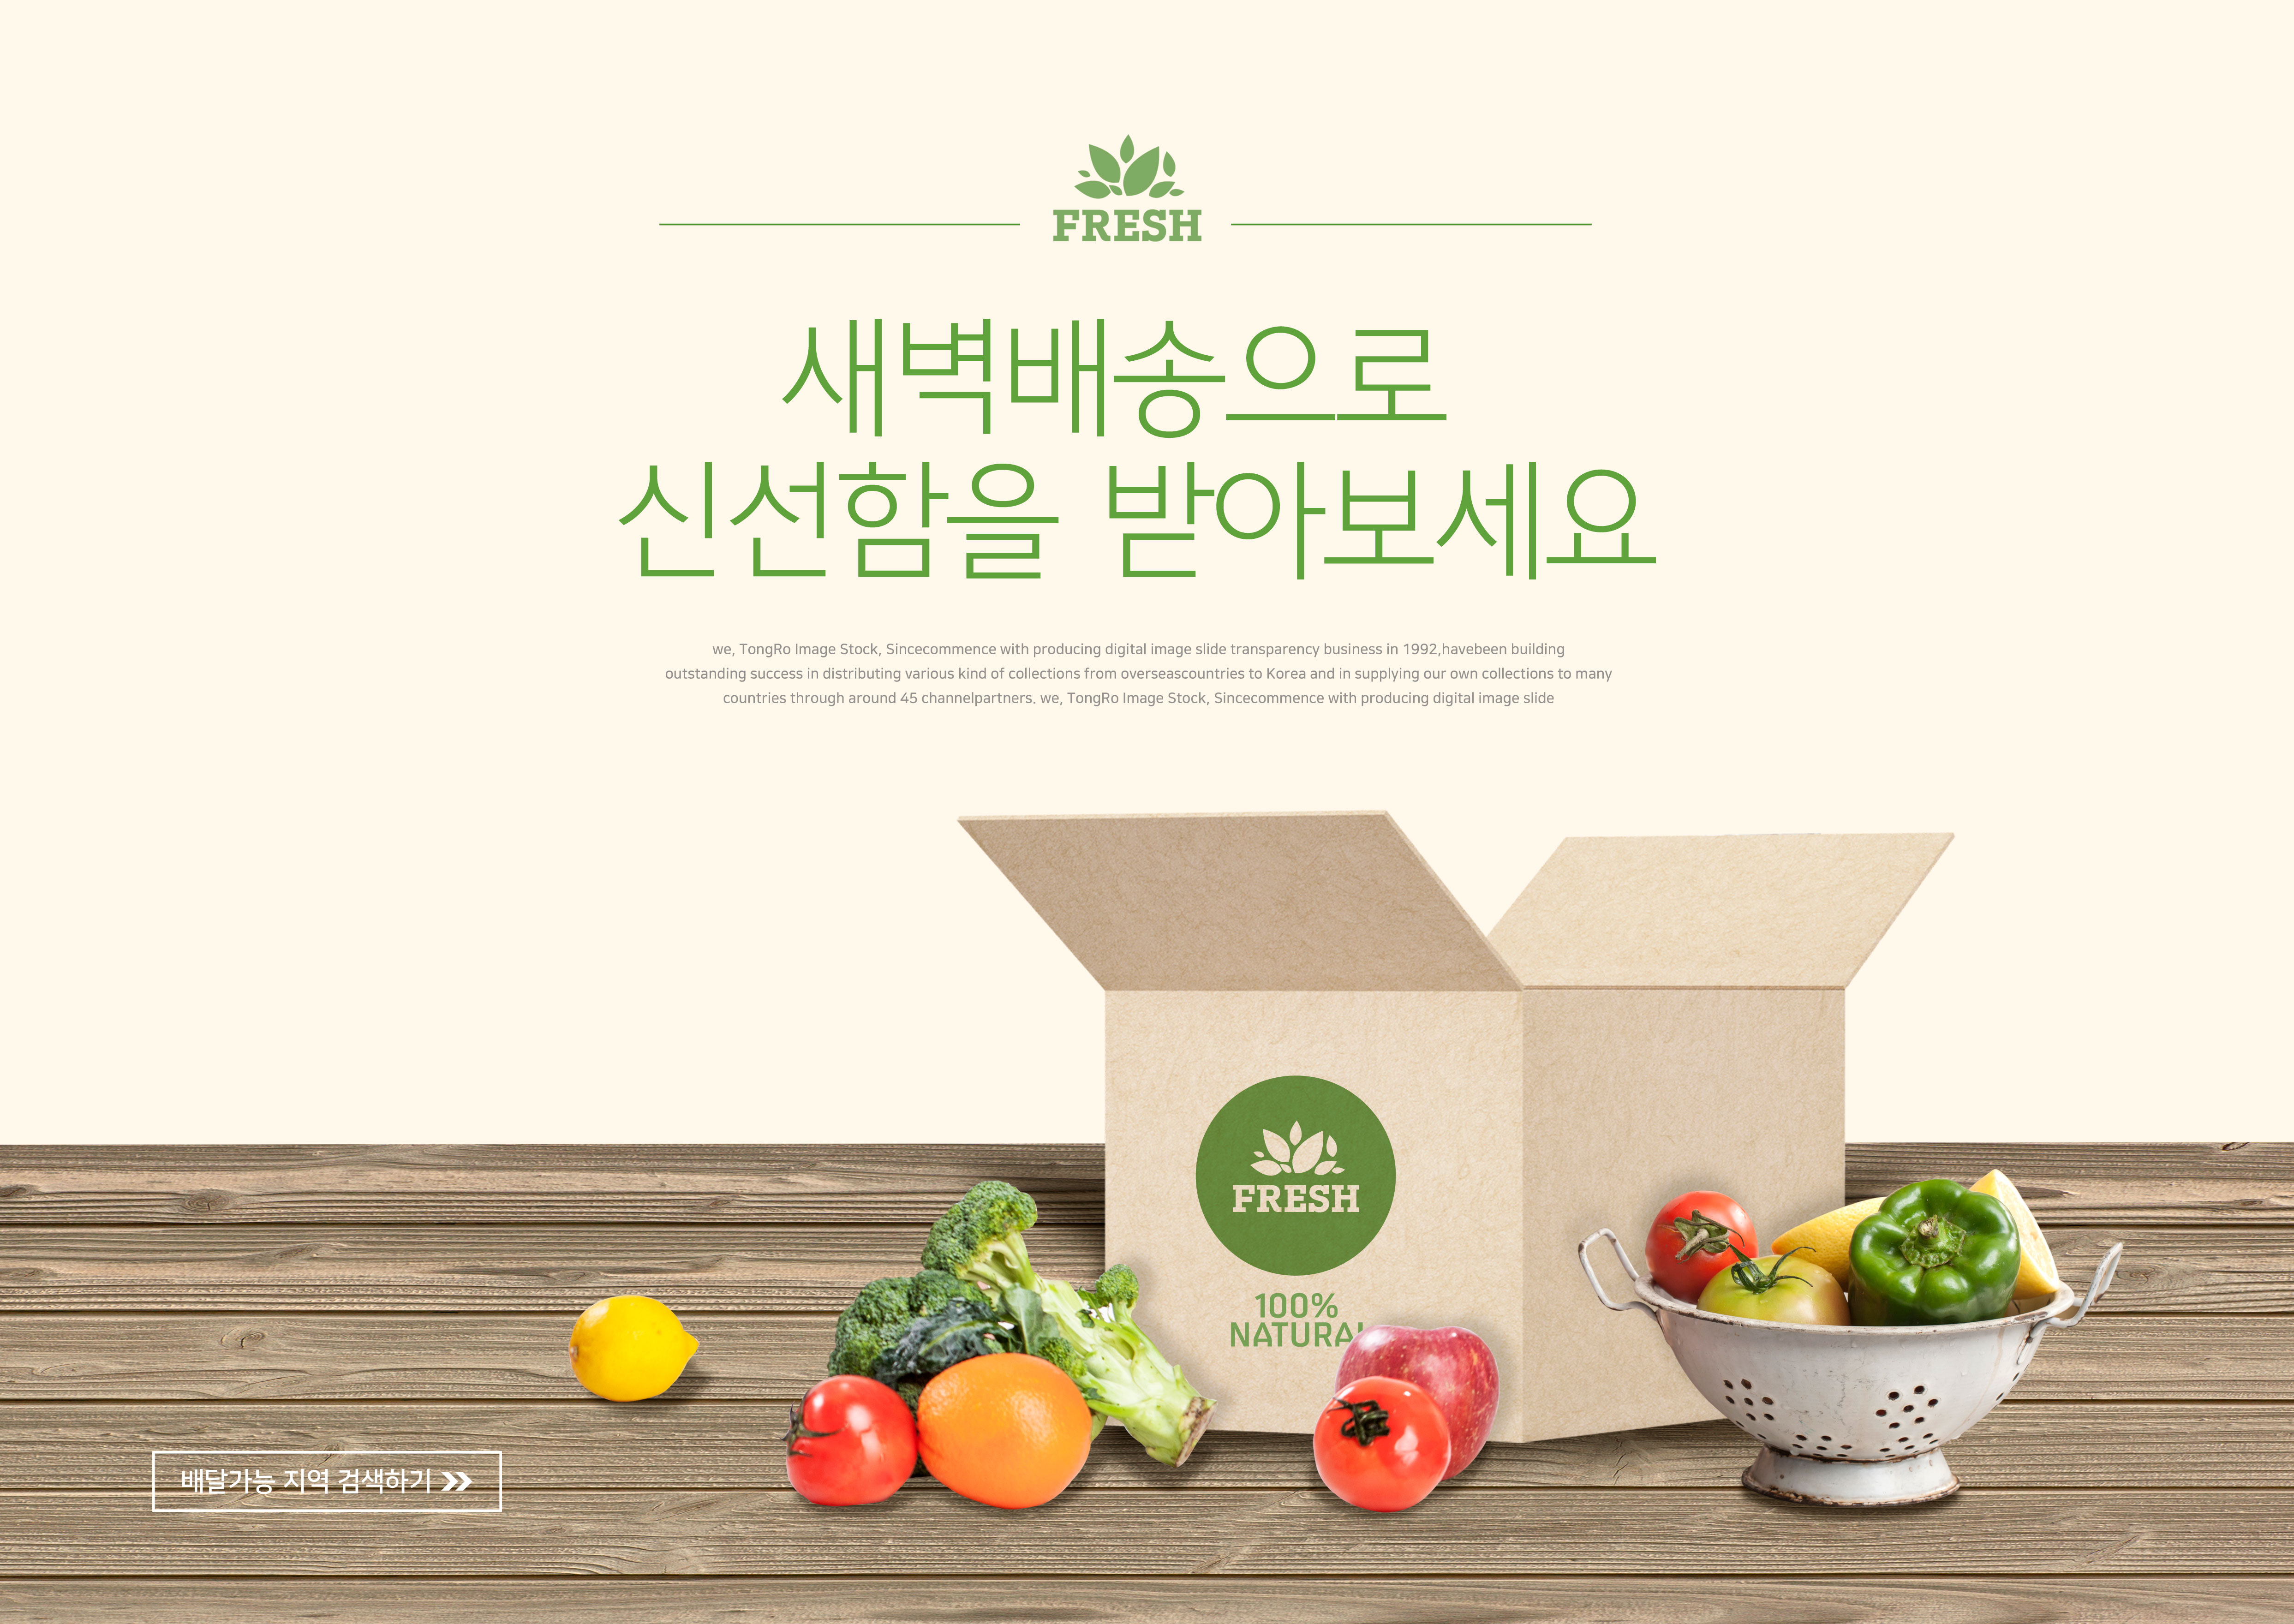 绿色有机食品海报设计素材套装[PSD]插图(2)